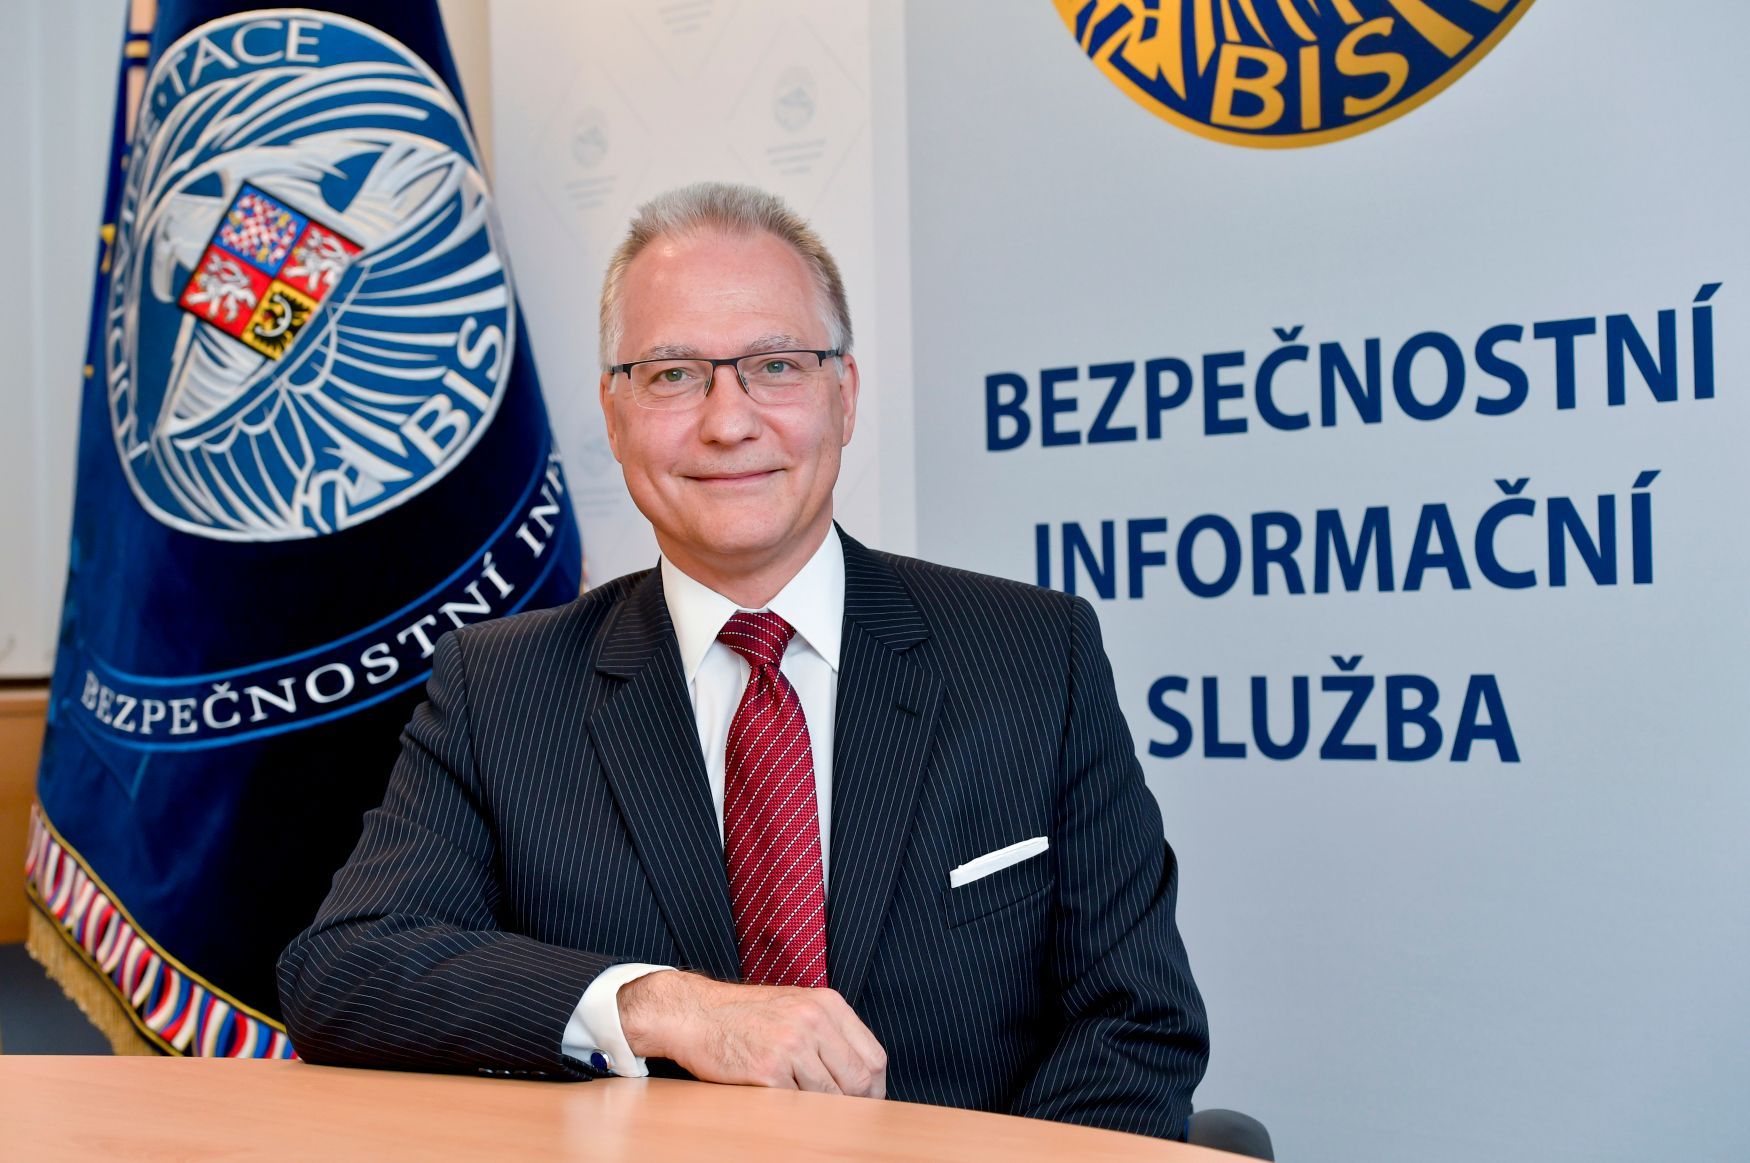 Michal Koudelka, BIS, Bezpečnostní informační služba